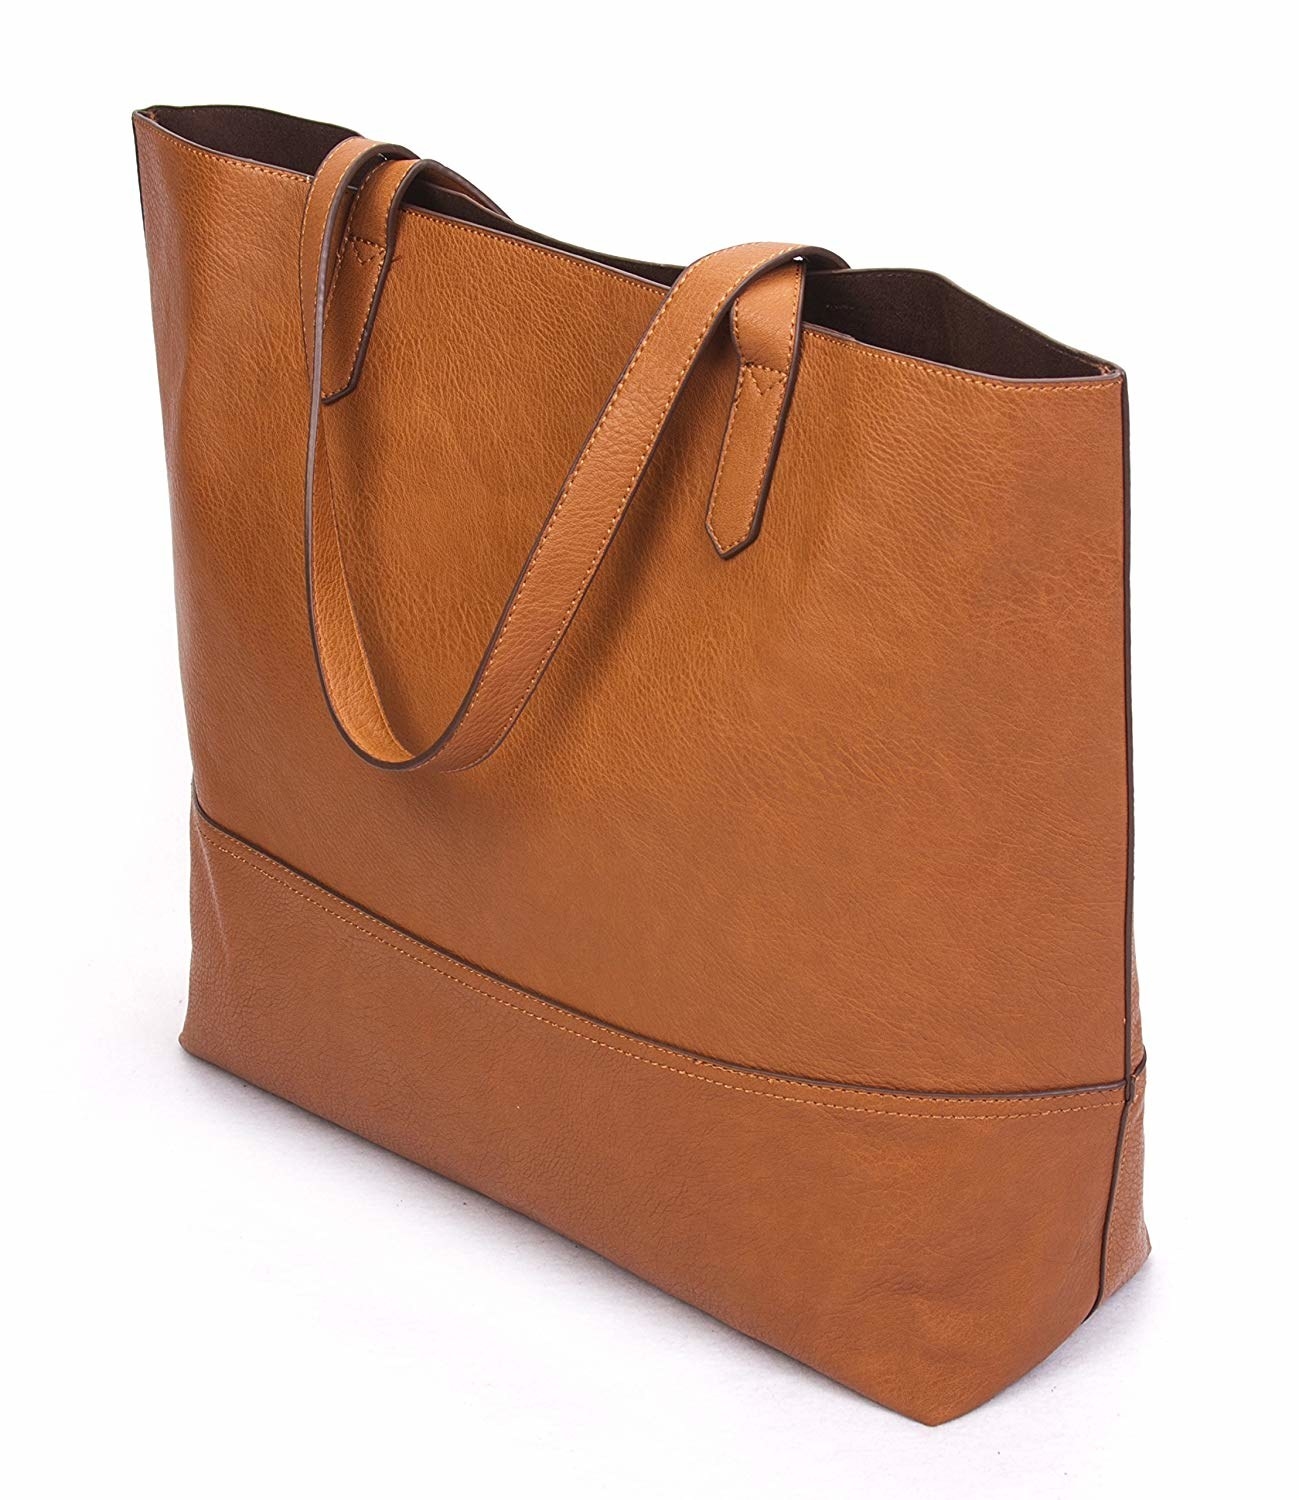 Buy Mumuso Tote Shoulder Bag Bag for Grocery Shopping Travel  Beach  Shopping Bags Travel Bag for Women Girls Ladies Grey at Amazonin